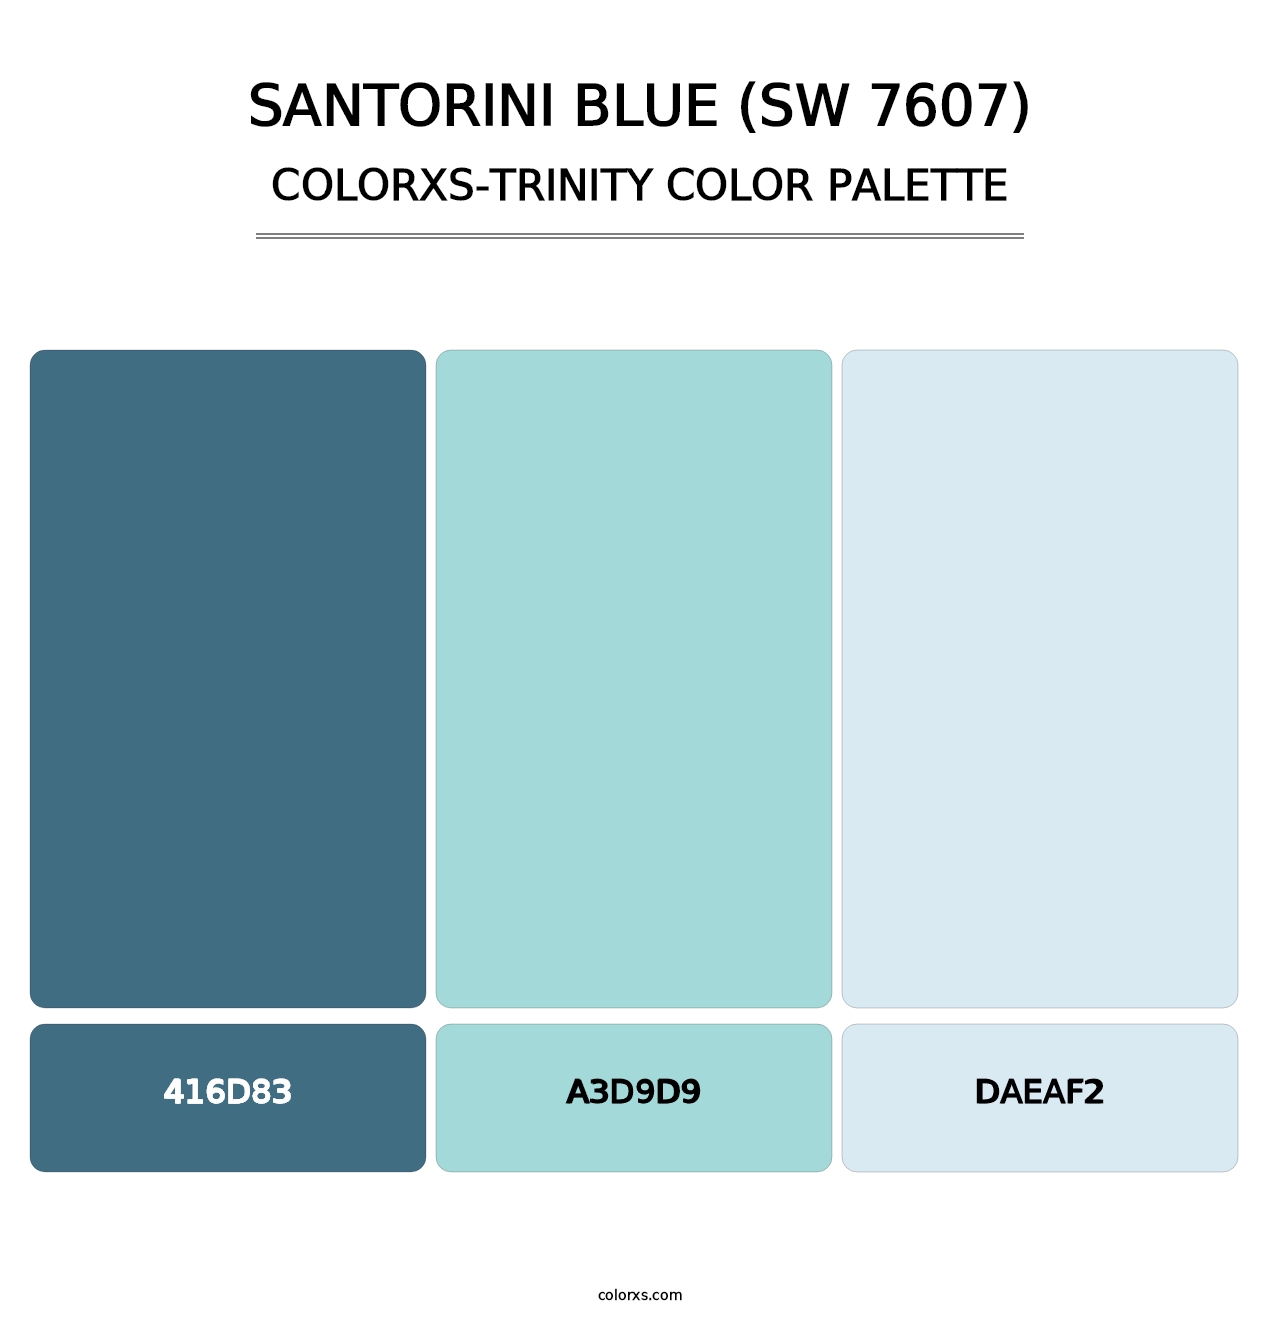 Santorini Blue (SW 7607) - Colorxs Trinity Palette